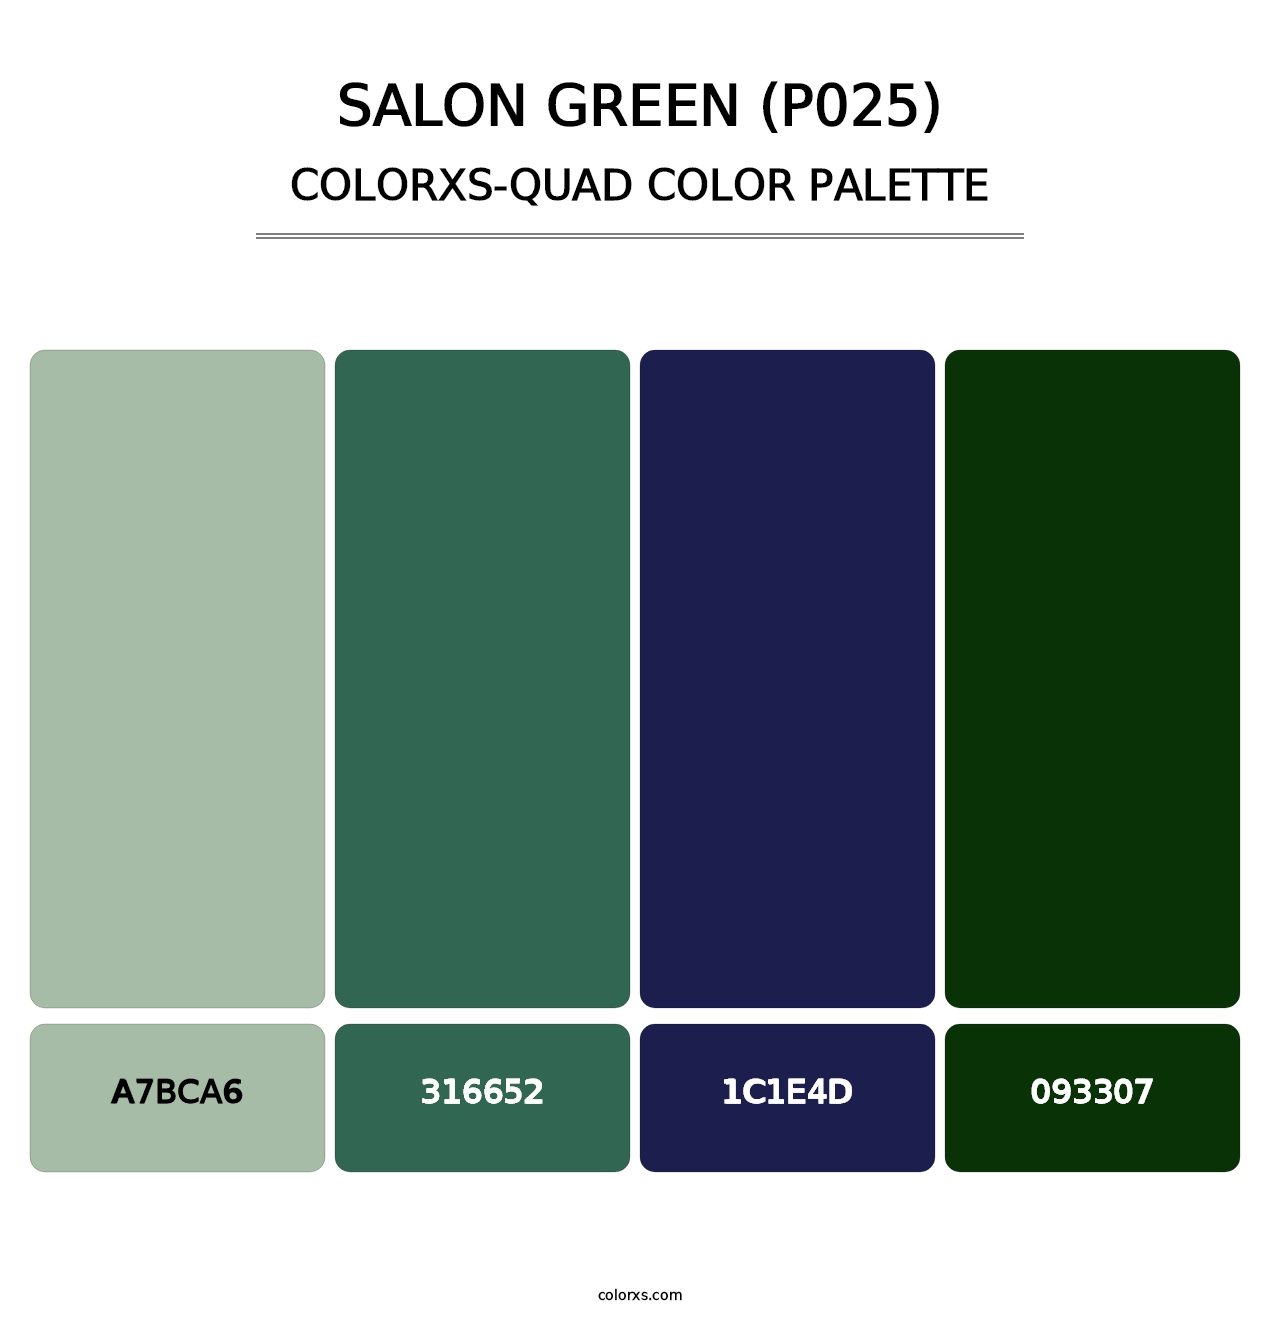 Salon Green (P025) - Colorxs Quad Palette